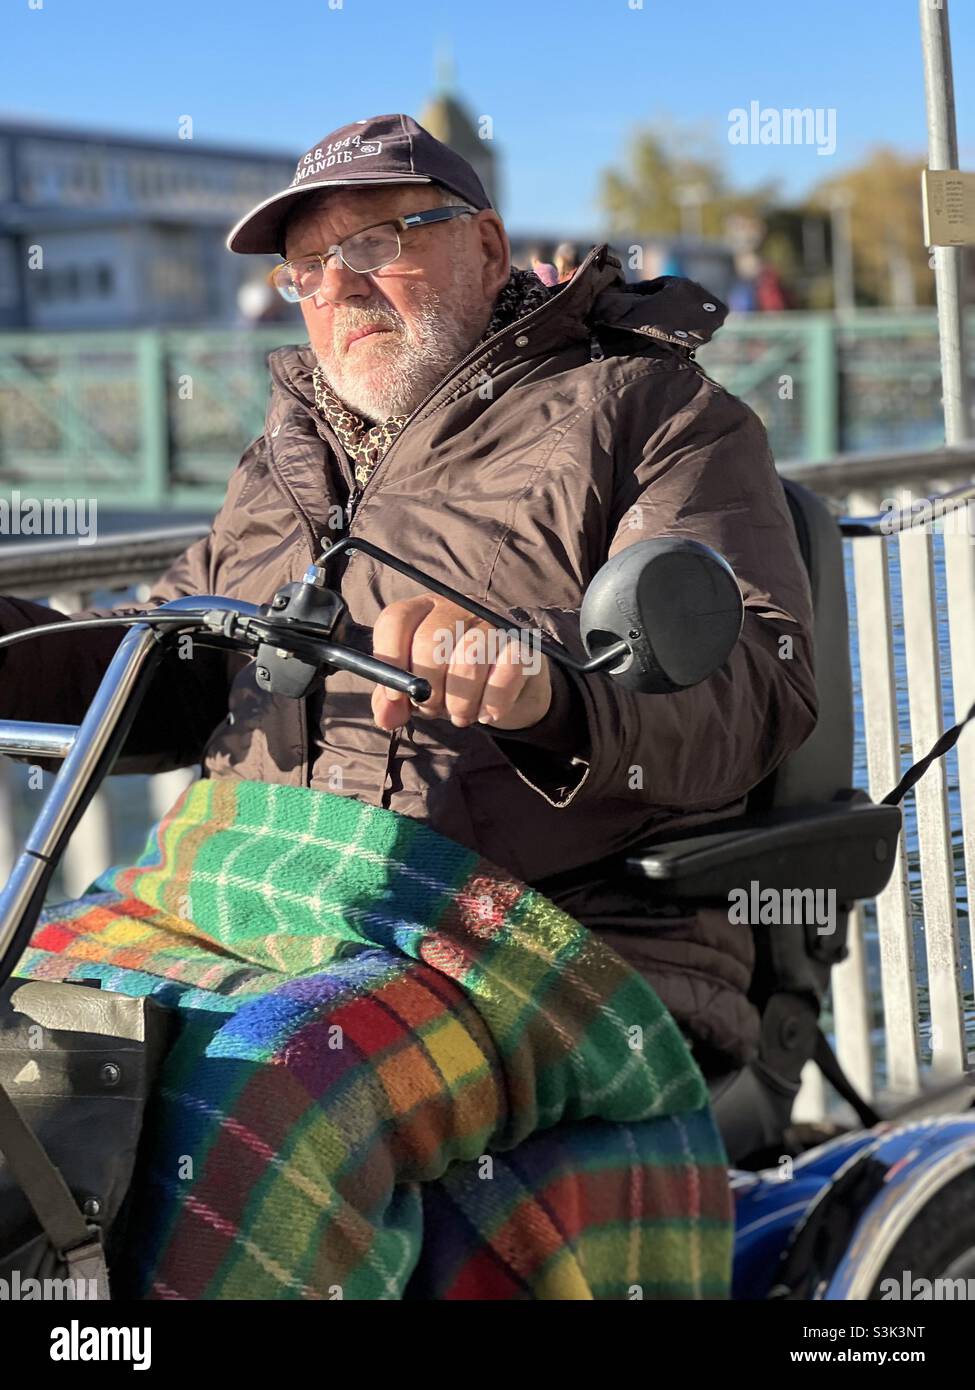 Uomo vecchio su una sedia a rotelle elettrica. Guida nel centro di Zurigo, in Svizzera, lungo il fiume Limmat. Il veicolo gli garantisce la mobilità e può superare la sua disabilità. Foto Stock